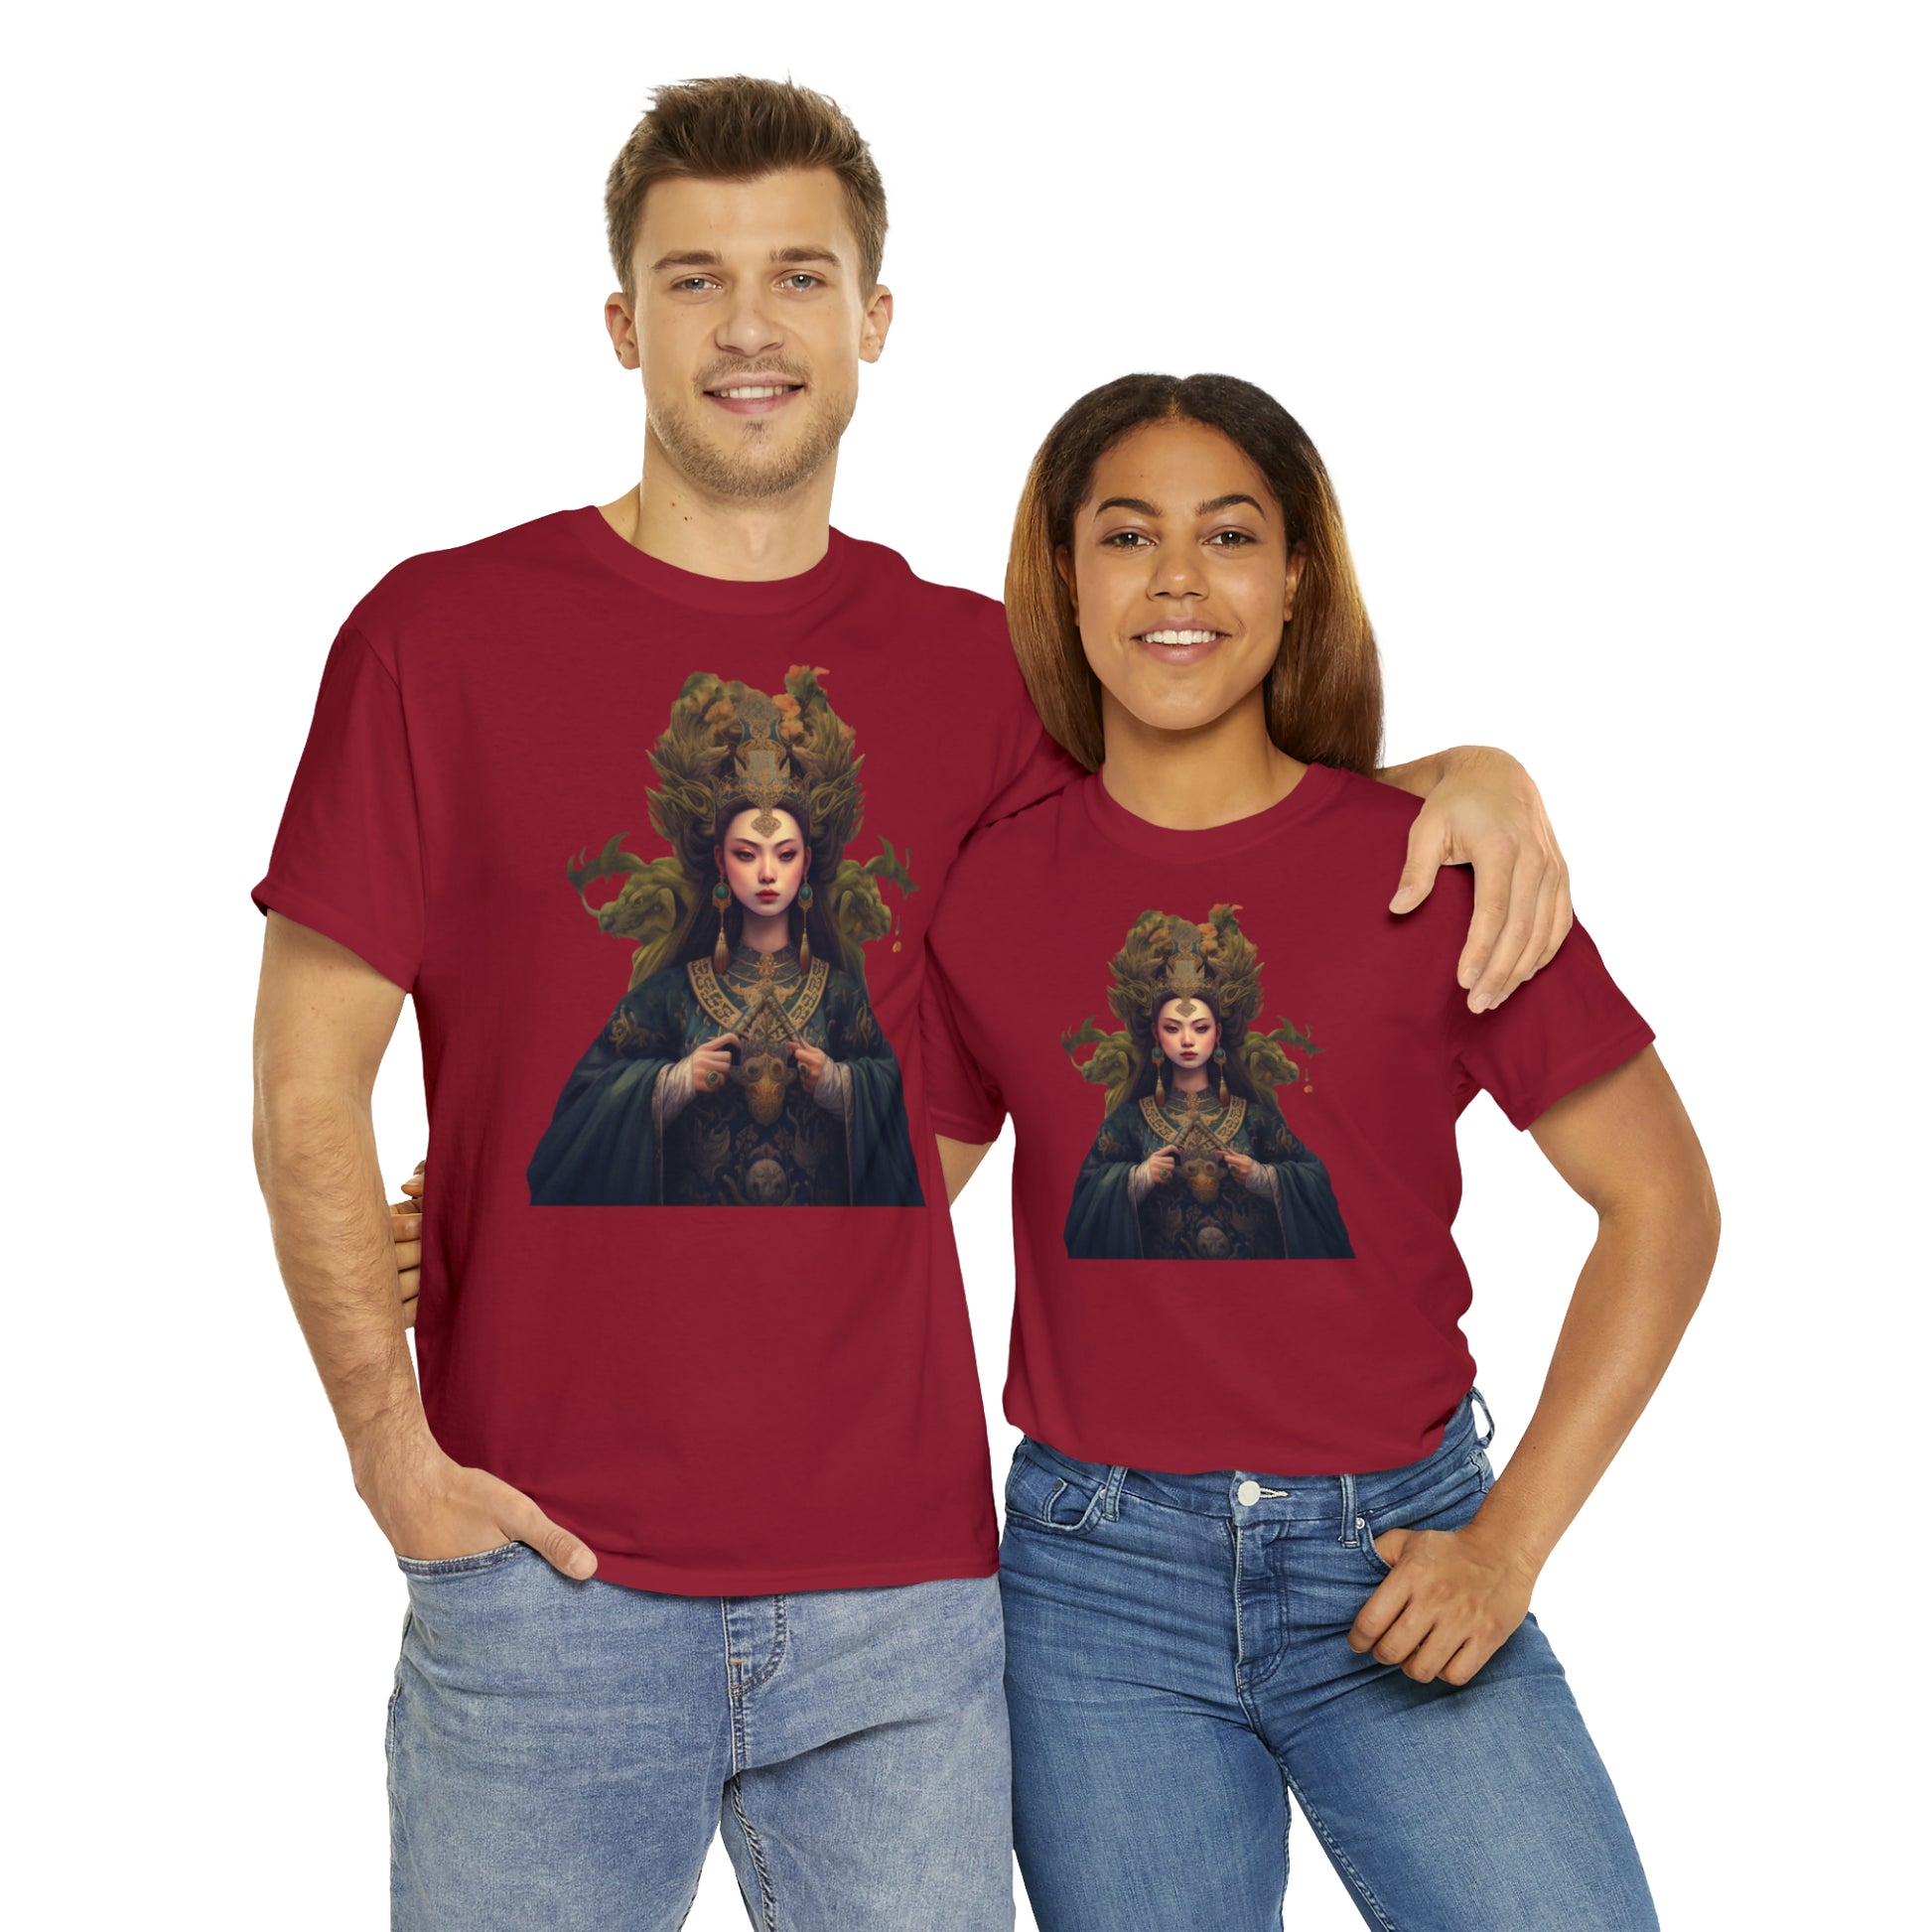 Quan Yin Goddess T-Shirt - Spiritual Tee, Guan Yin, Goddess of Compassion T-Shirt   